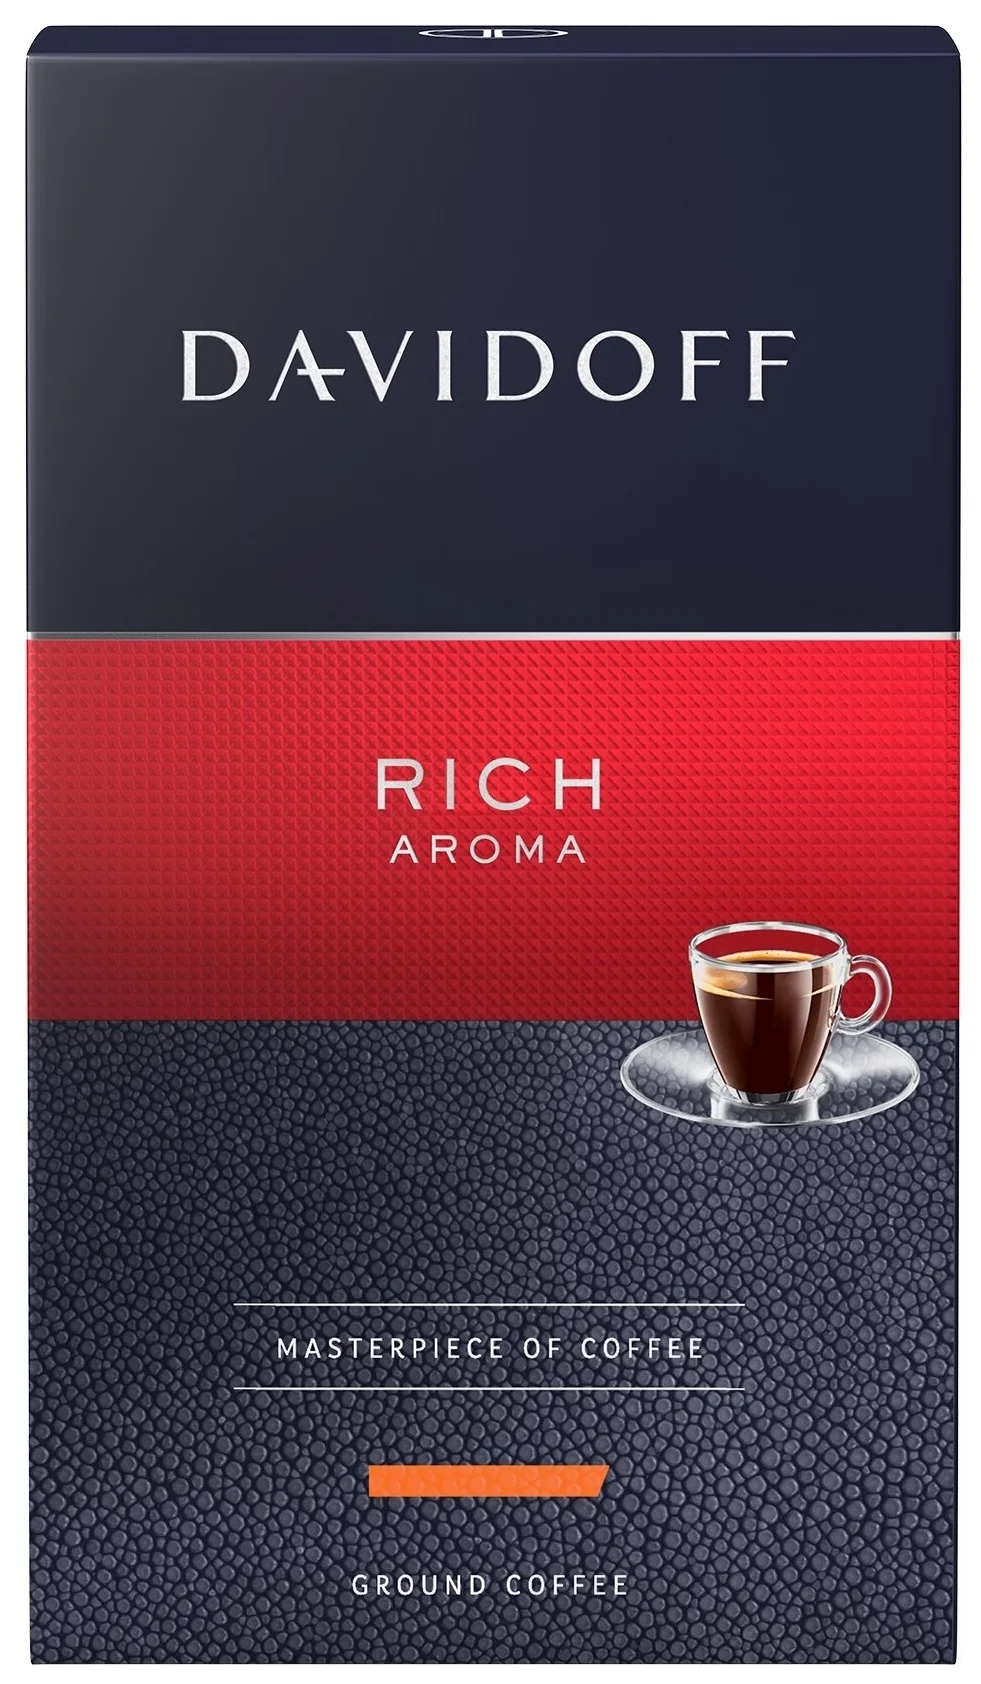 Davidoff Rich aroma - вид зерен: арабика